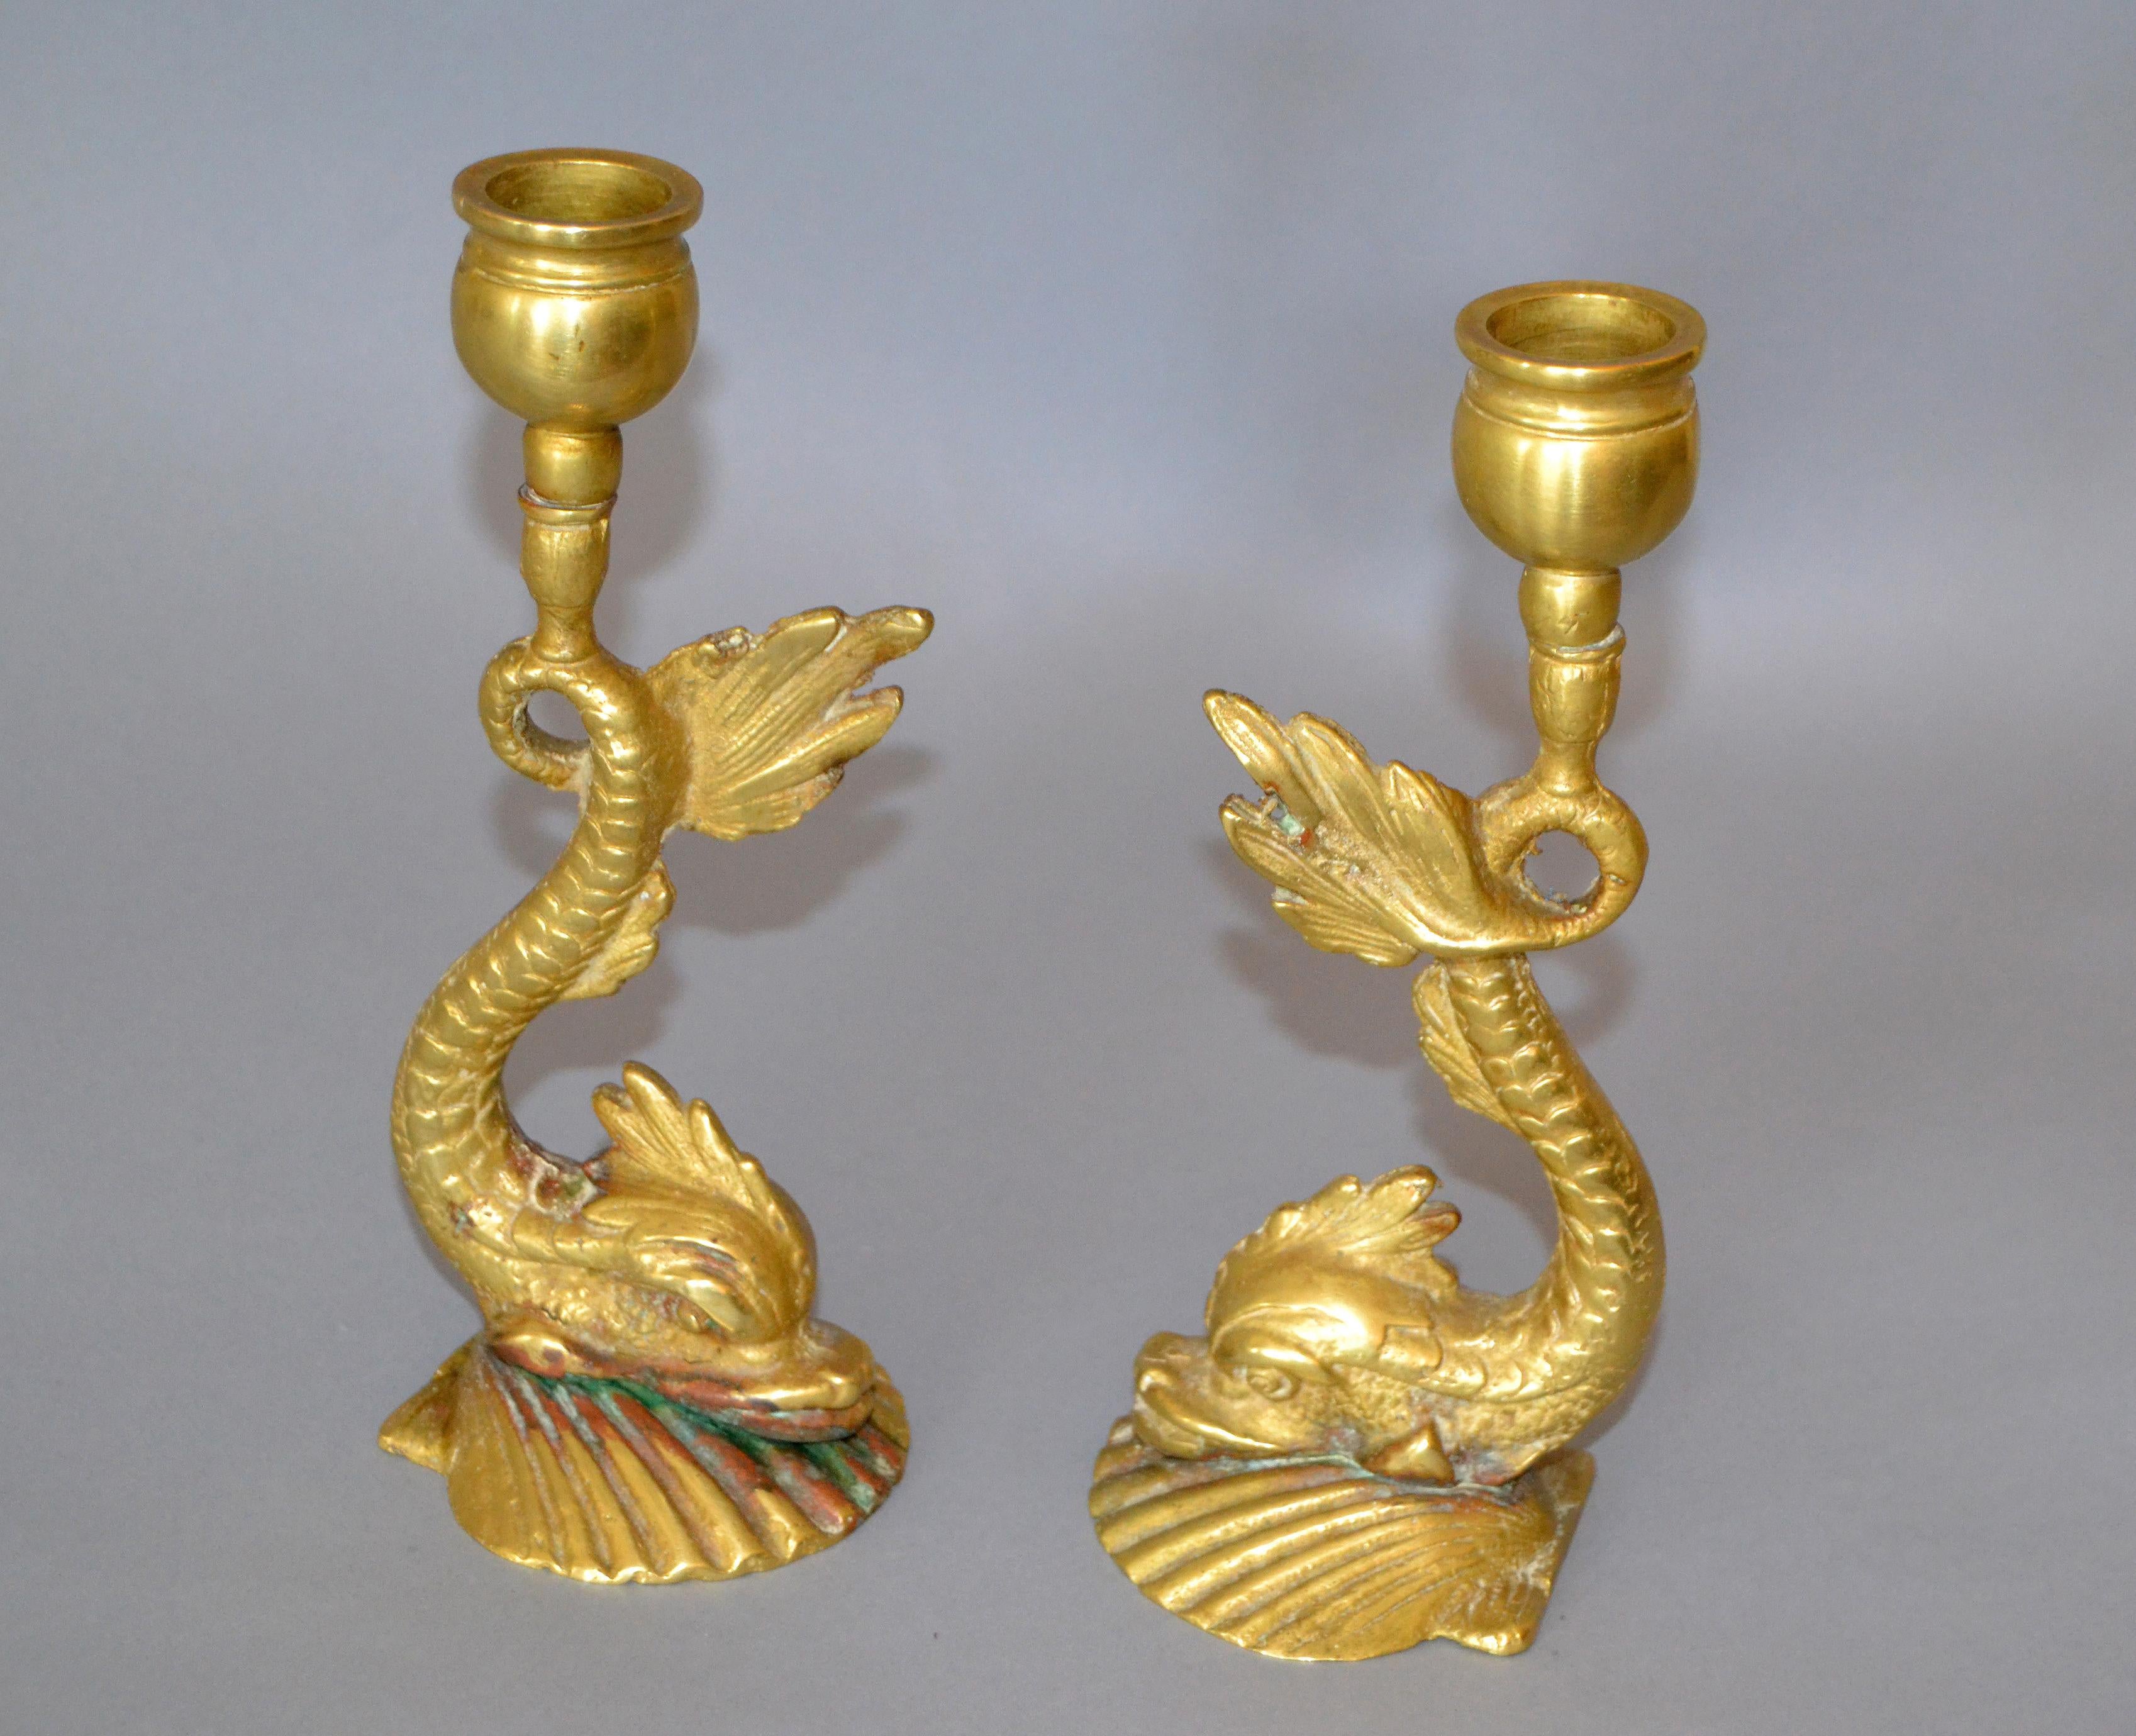 Zwei figurative Kerzenhalter aus Bronze im neoklassizistischen Stil mit Koi-Fisch oder Seeschlange, Kerzenständer.
Diese asiatisch inspirierten skulpturalen, gebogenen Kerzenhalter zeigen ein fischähnliches Wesen auf einem muschelförmigen Sockel.